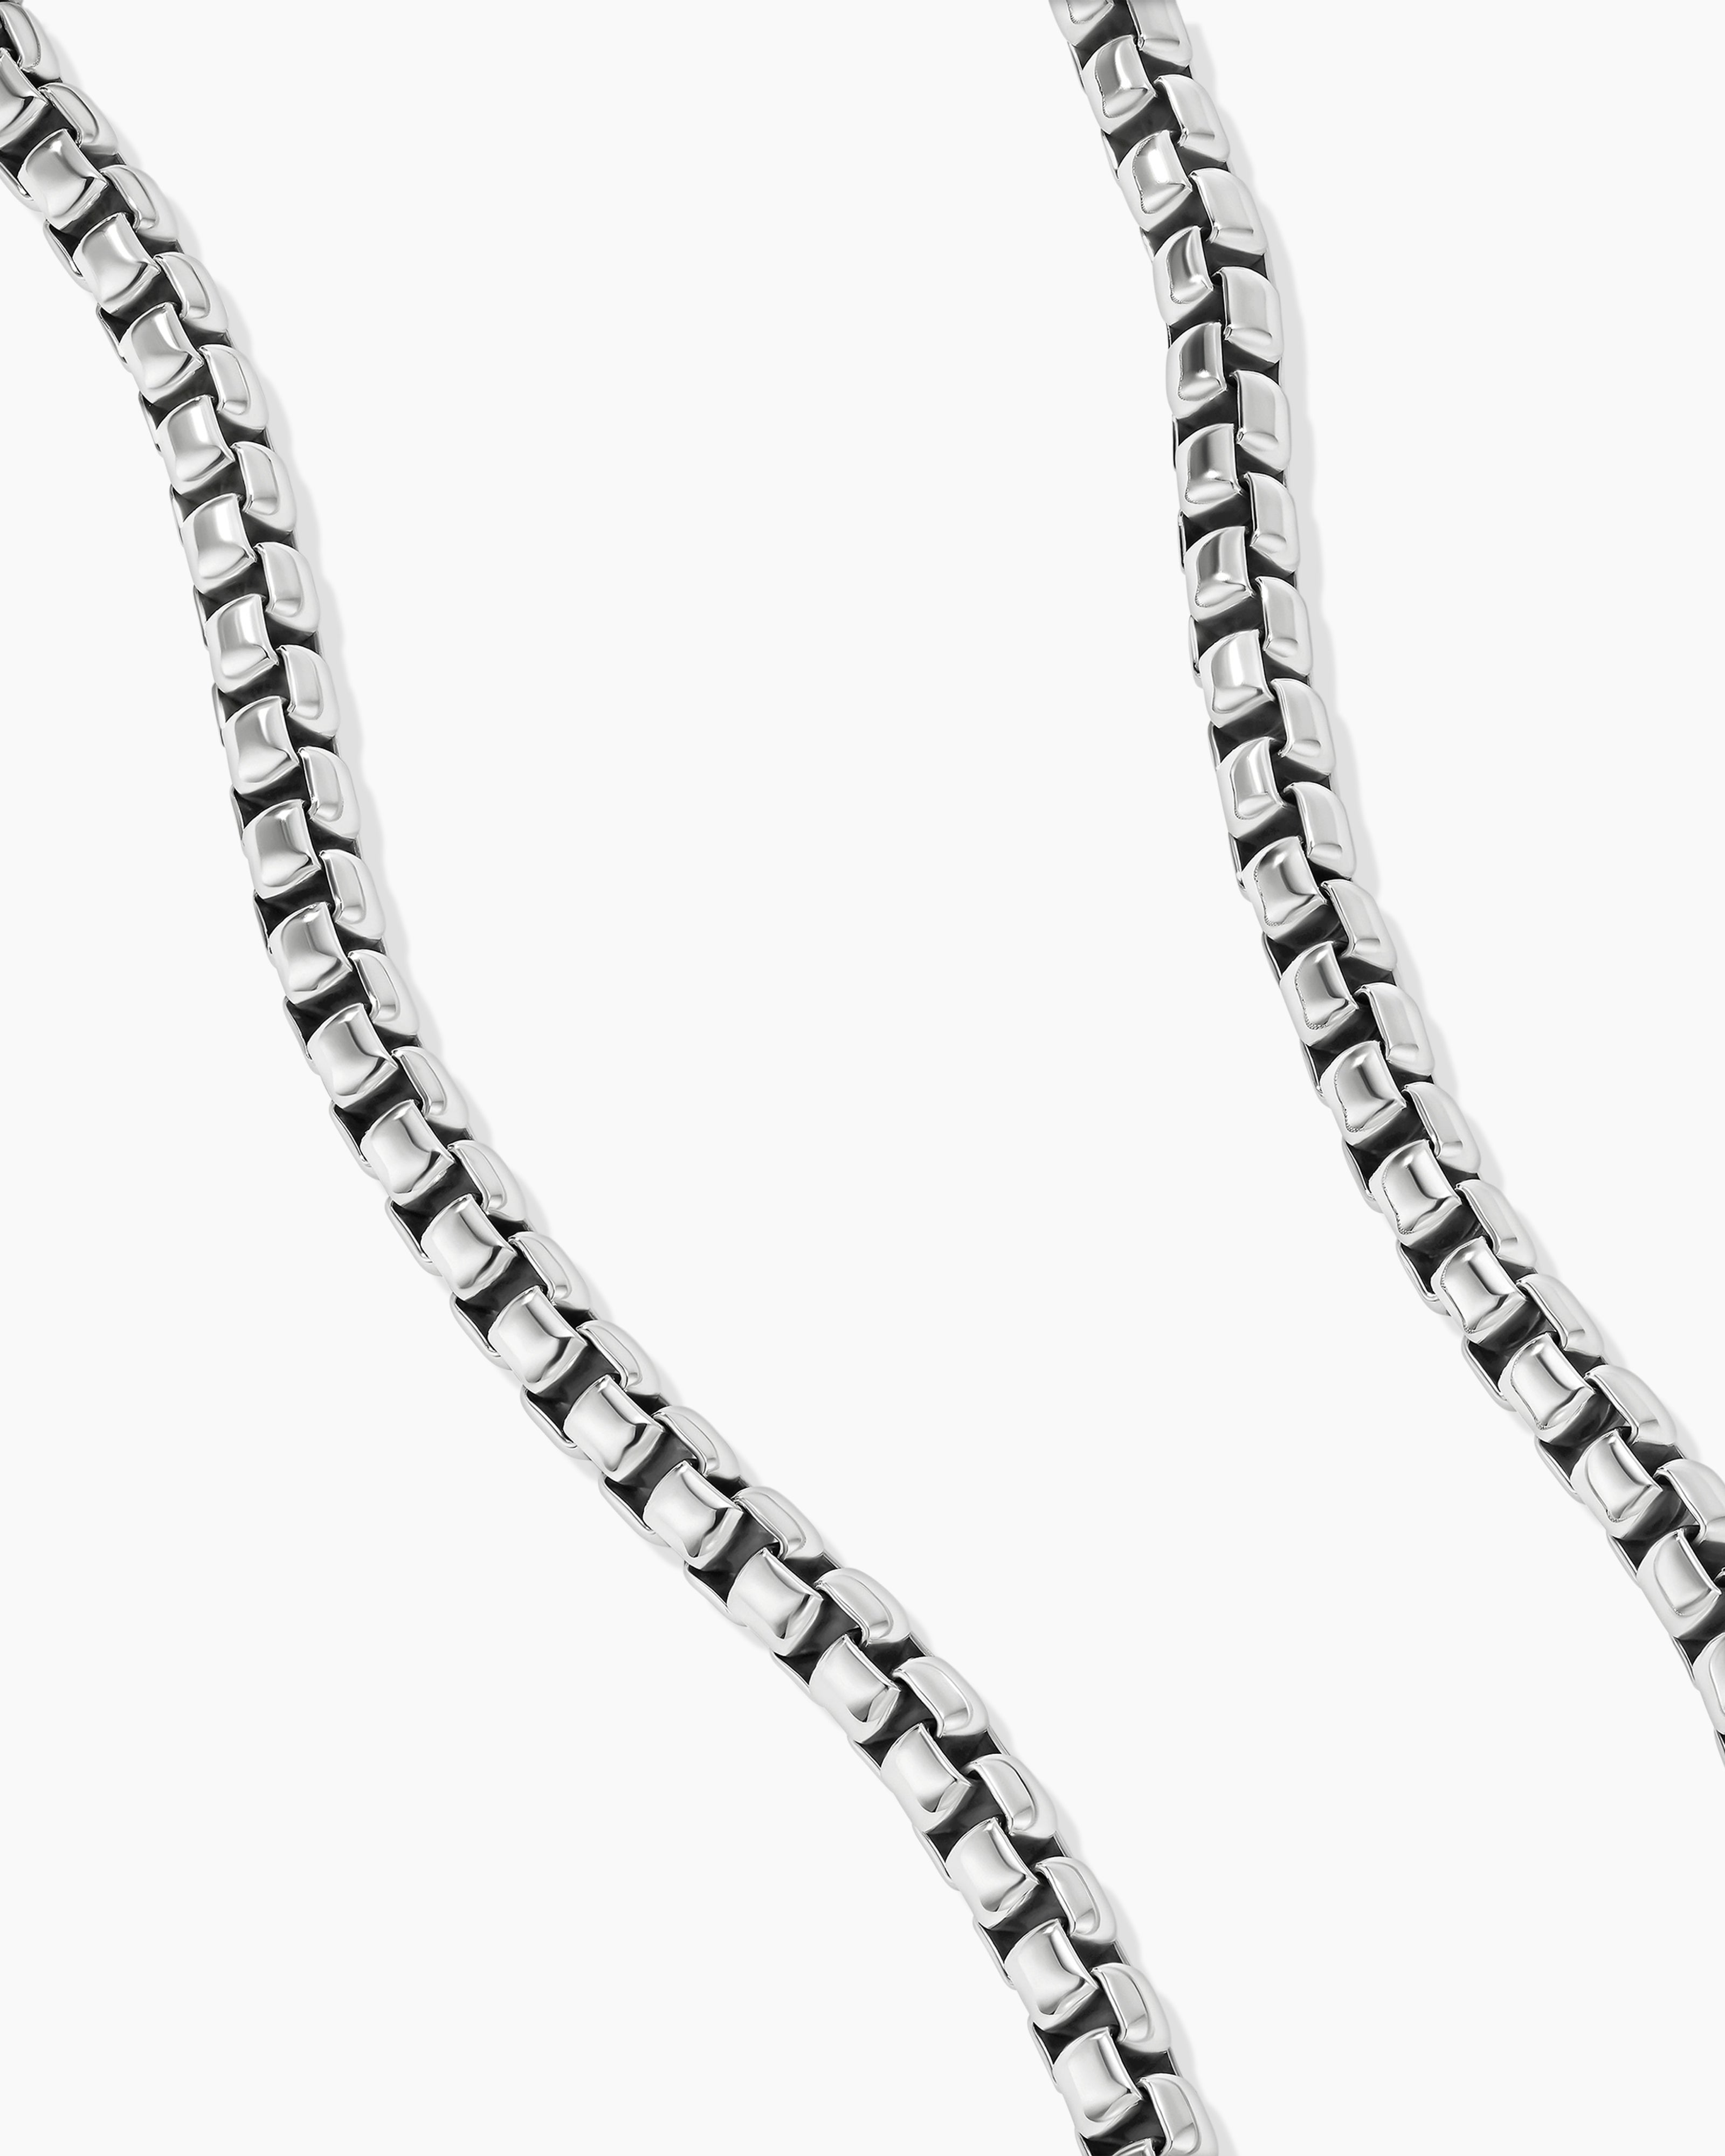 7mm Silver Purse Box Chain Metal Chain Purse Chain Strap 